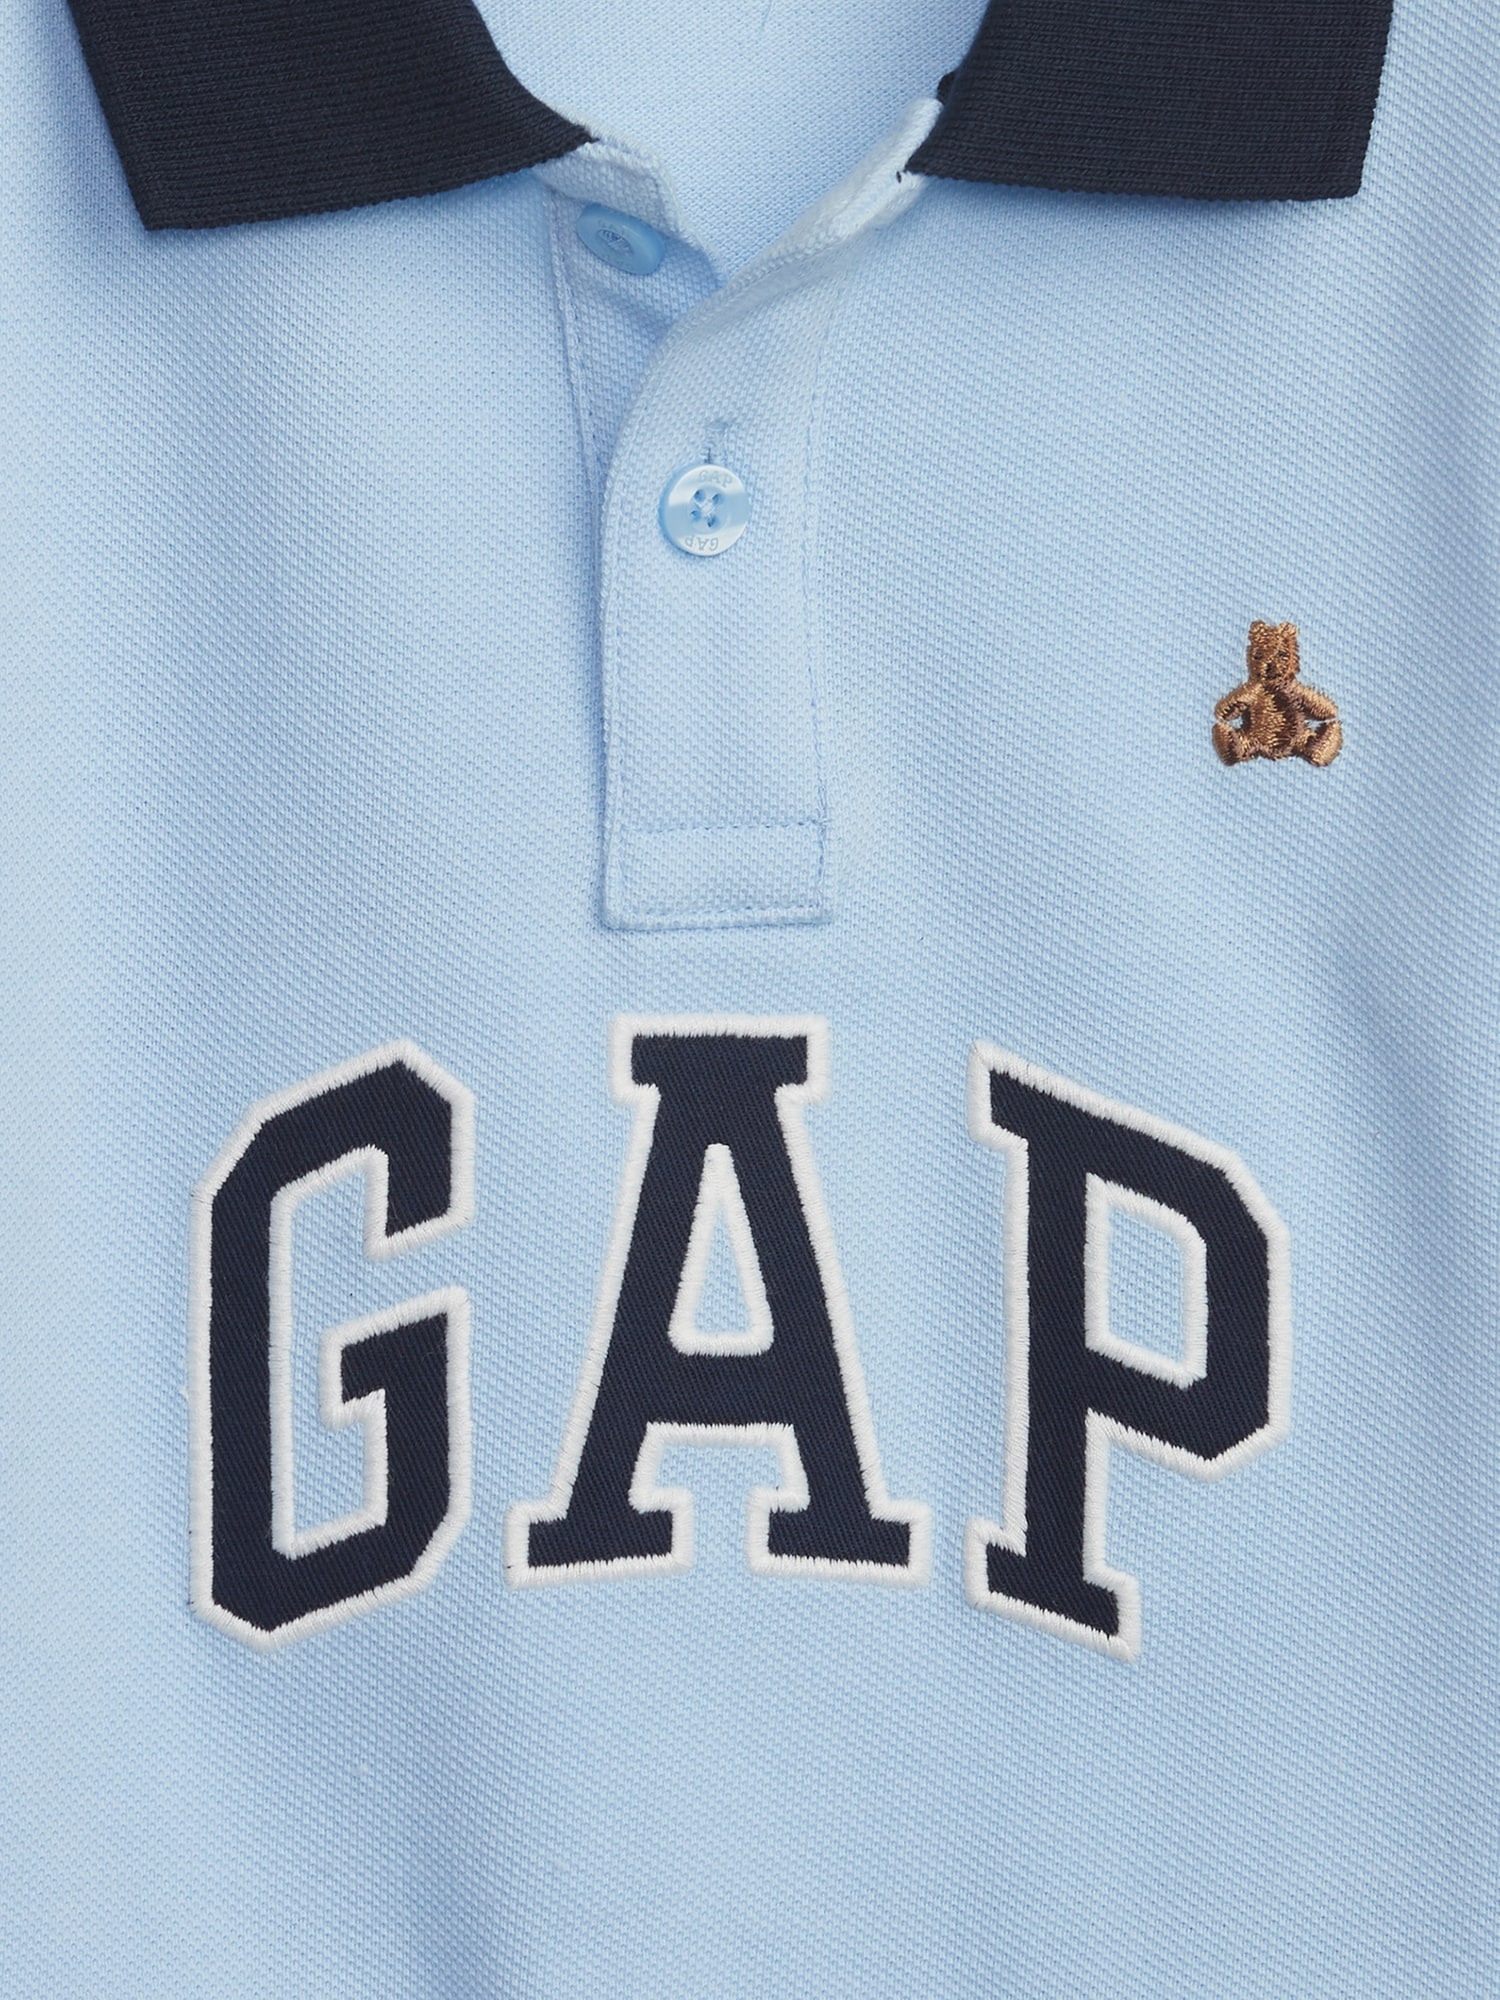 Gap公式オンラインストア | オーガニックコットン100% ピケポロシャツ